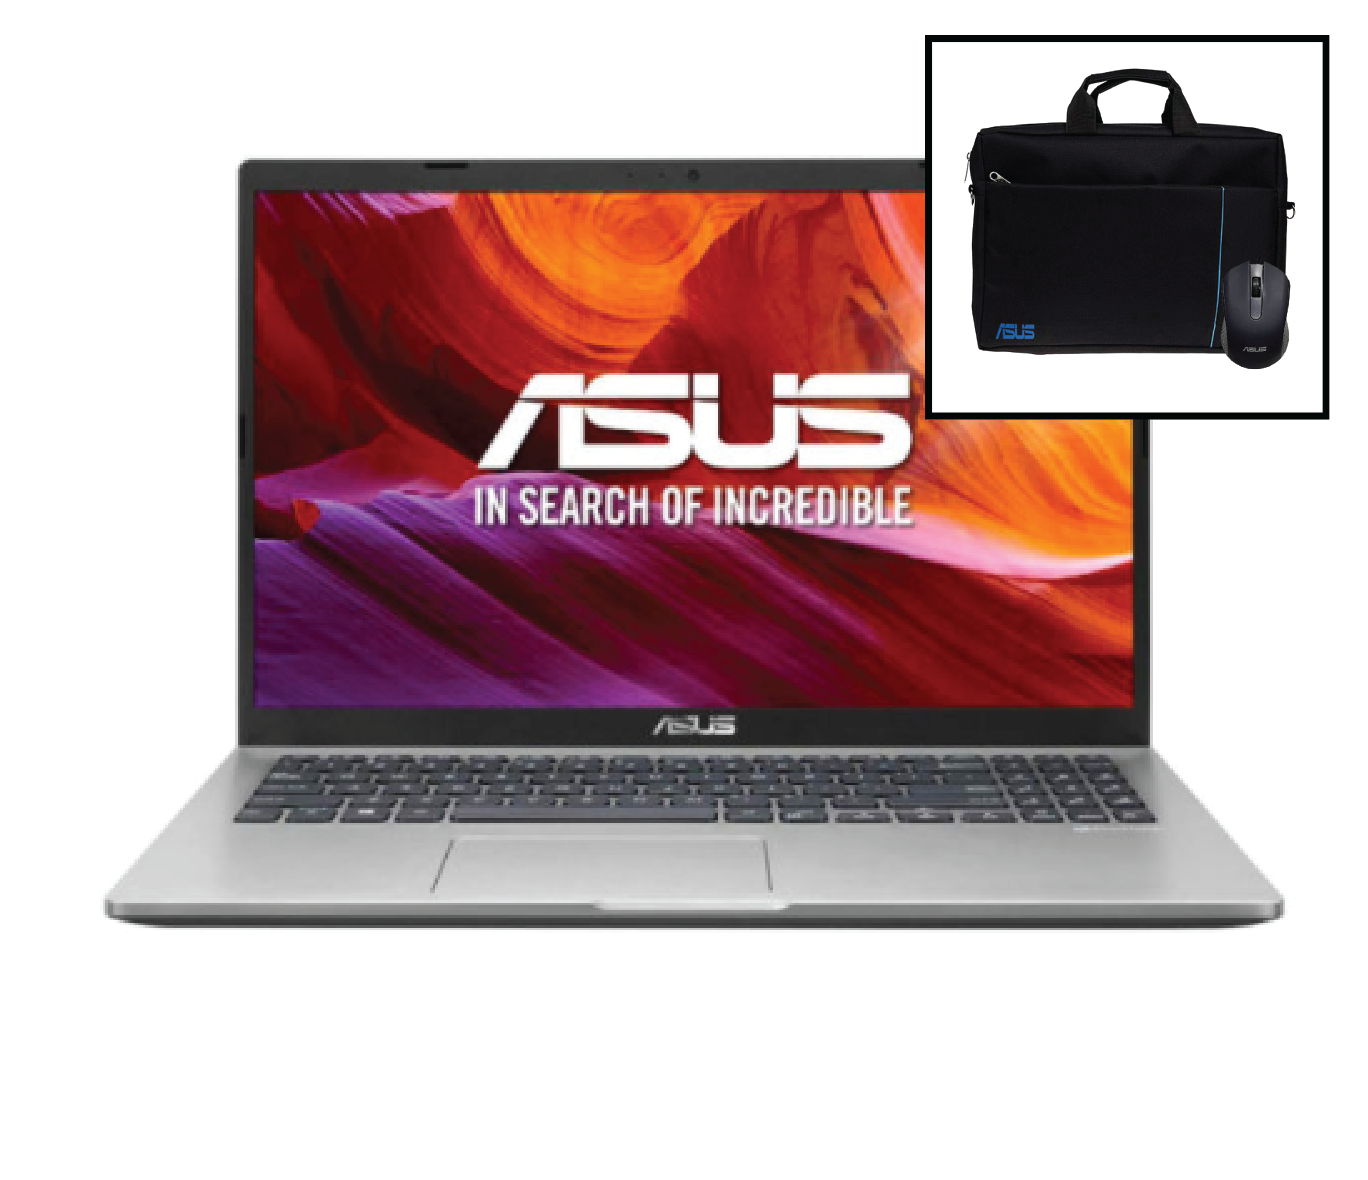 لپ تاپ ایسوس 15اینچ  Asus VivoBook 15 R521JB-B : Core i5-1035G1 / 8GB RAM / 1TB HDD / 2G MX110 thumb 622